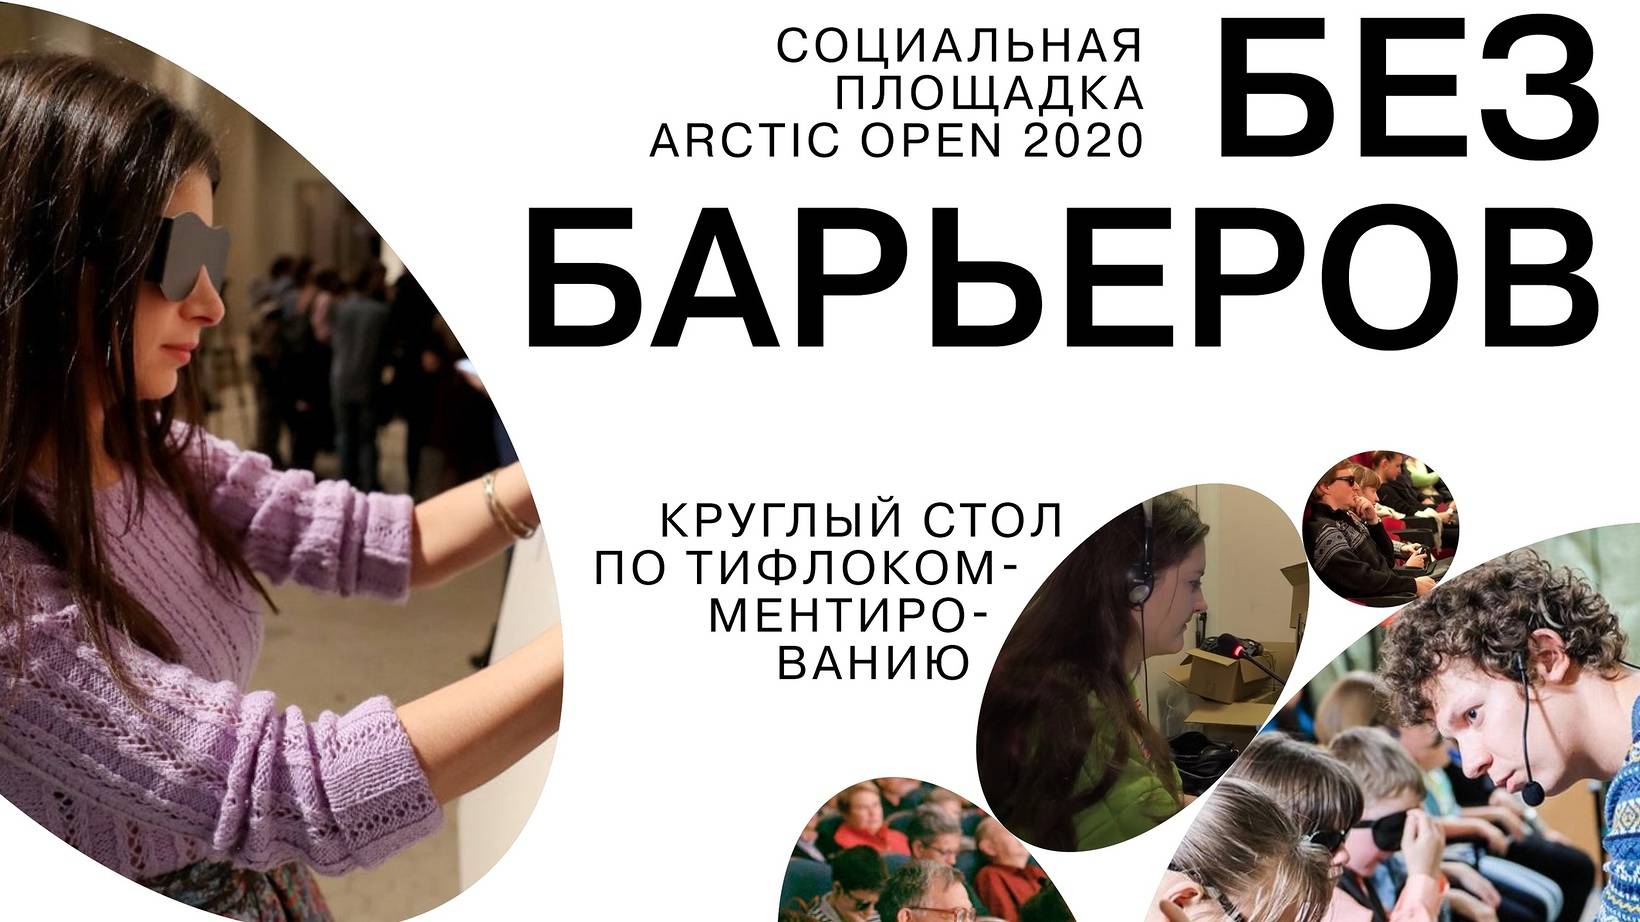 В Архангельске пройдёт круглый стол «Искусство без барьеров» по вопросам тифлокомментирования